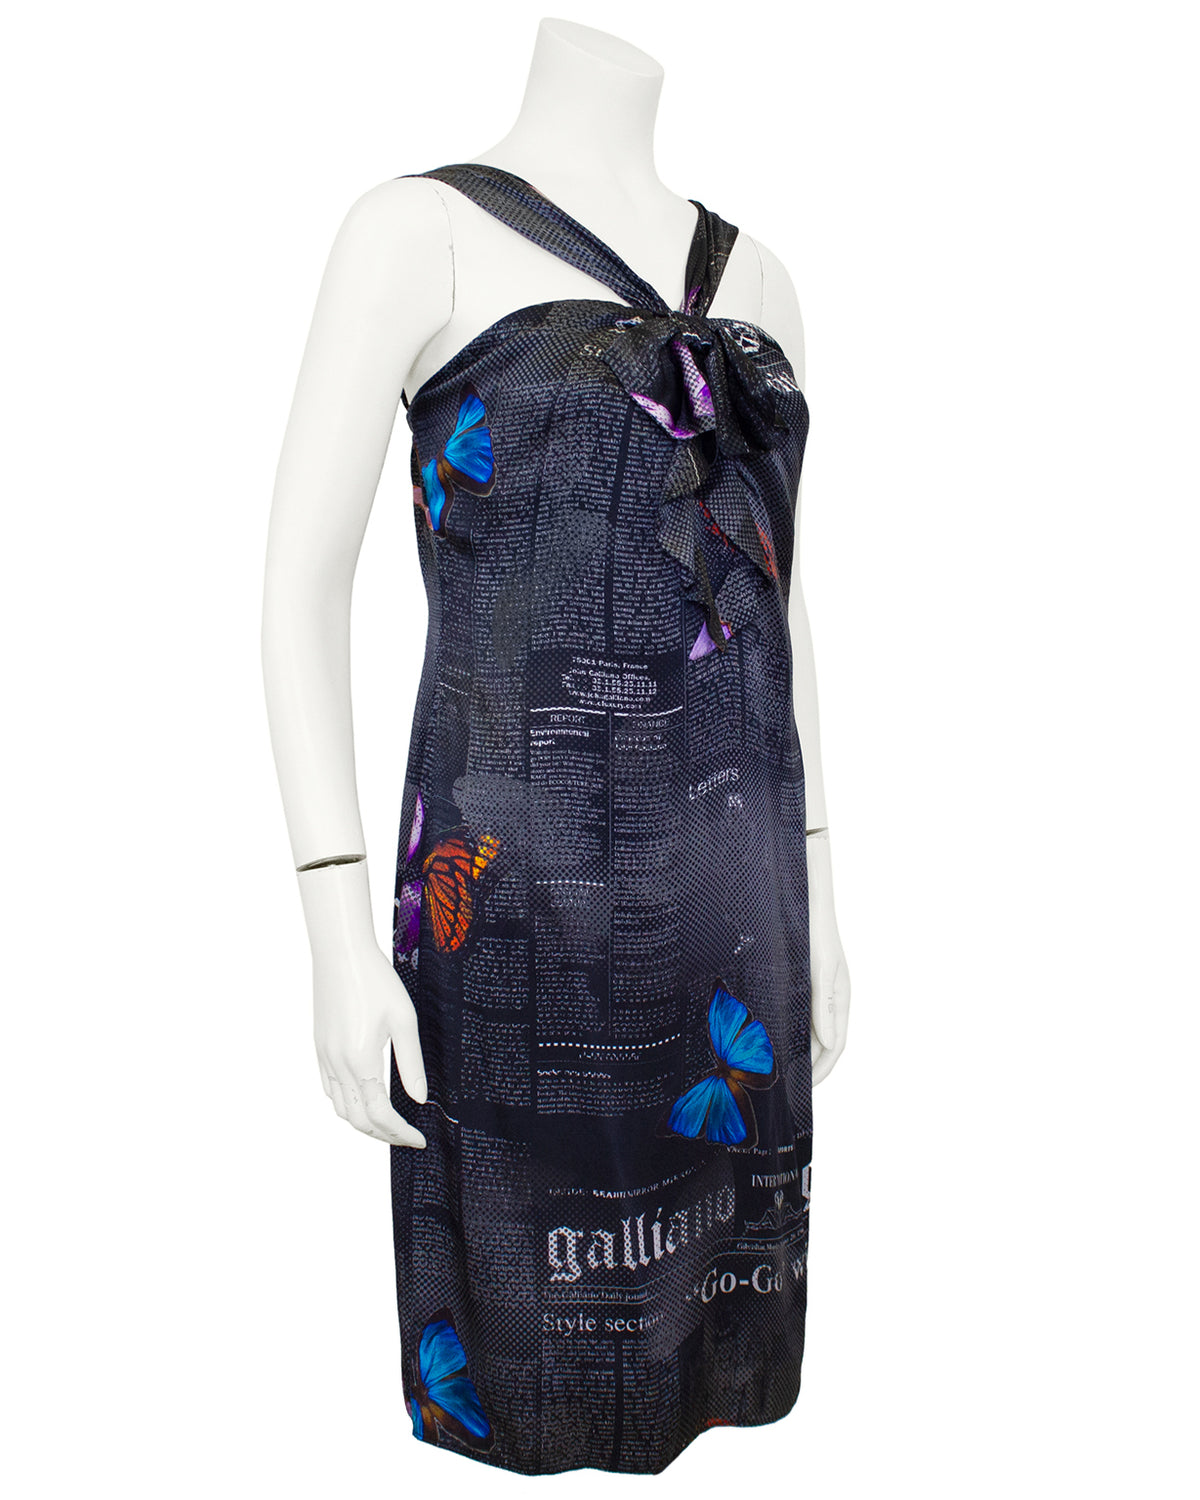 Butterfly Print Dress + Louis Vuitton St. Jacques Bag